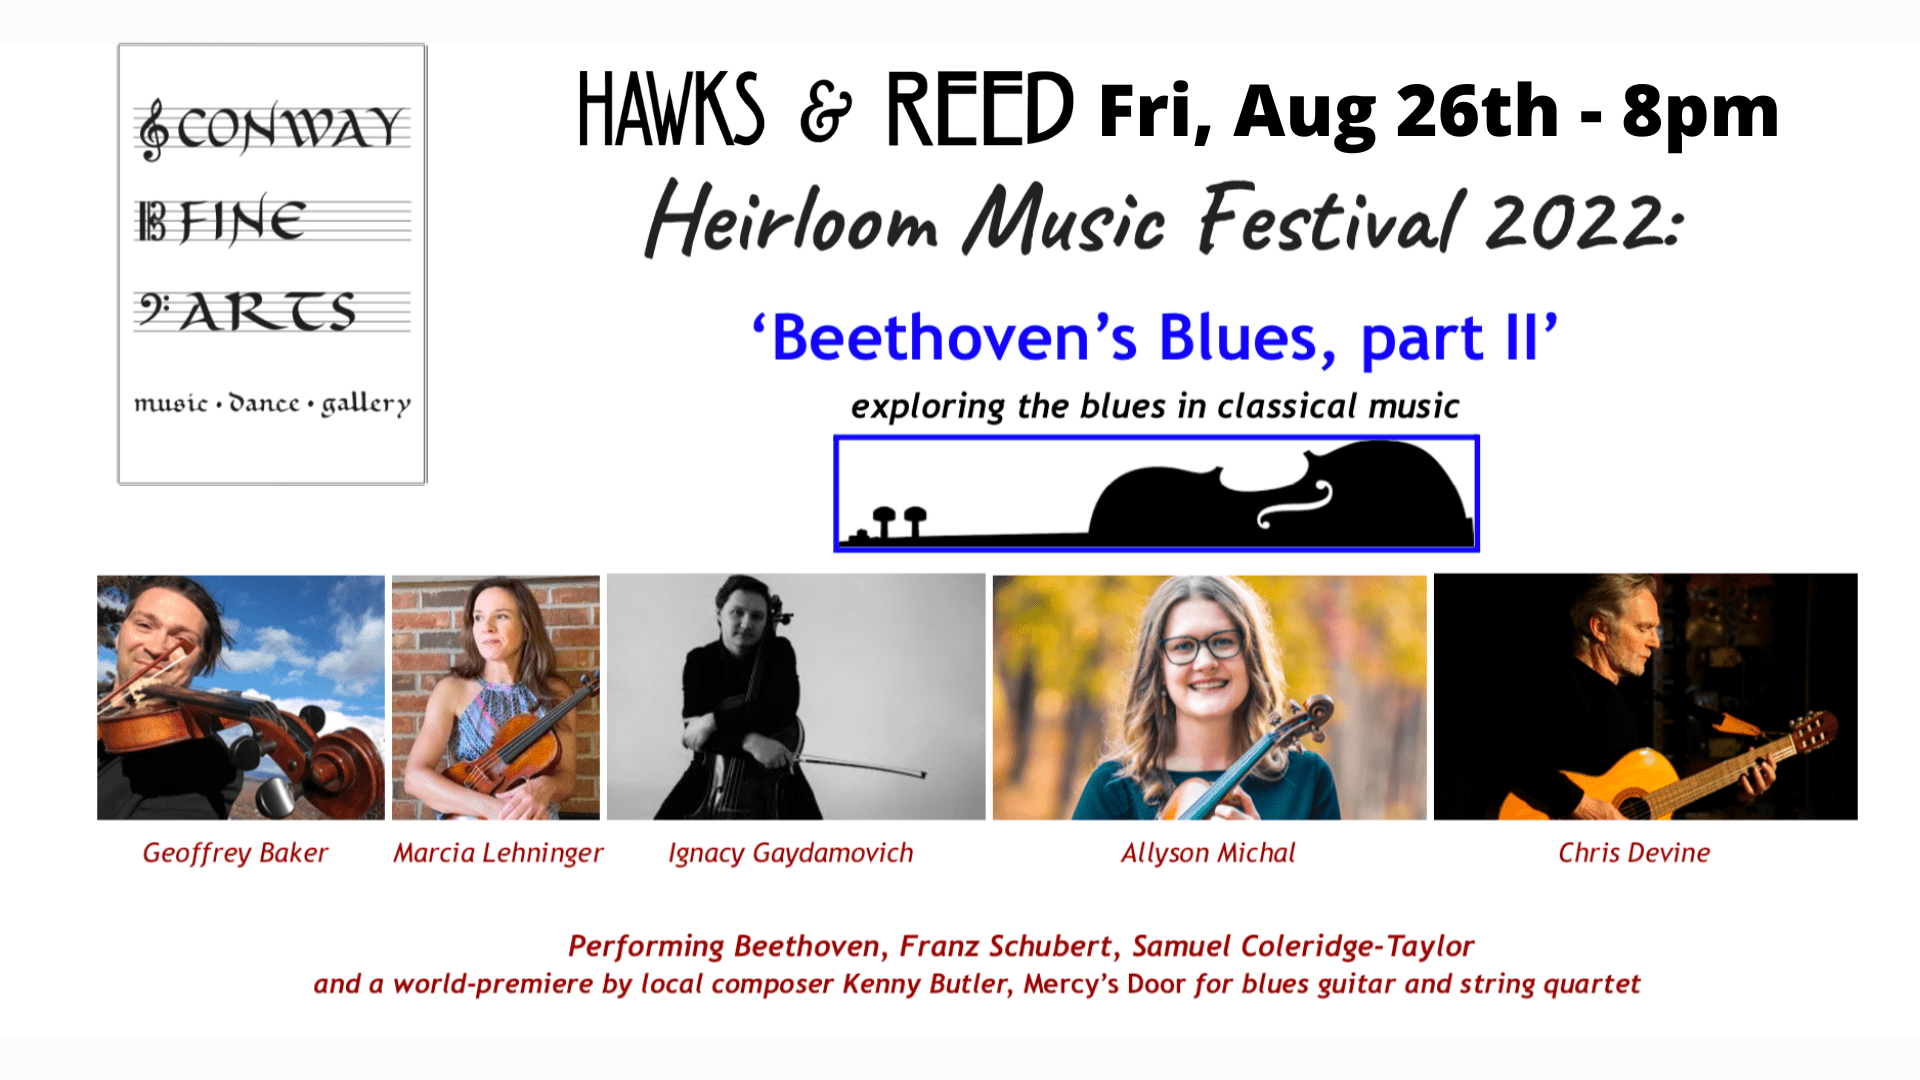 Heirloom Music Festival 2022 at Hawks & Reed